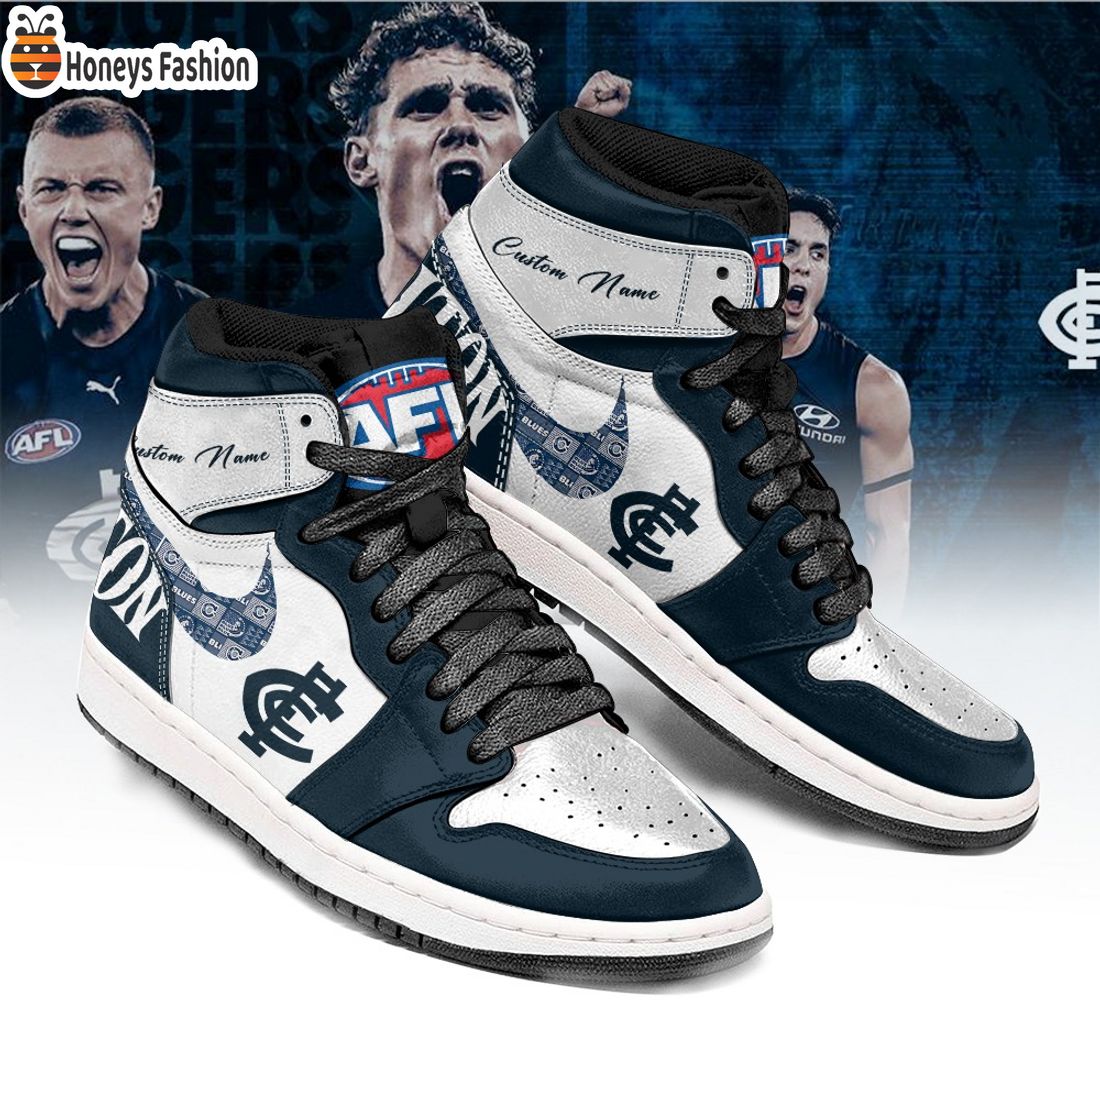 Carlton Blues Football Club Custom Name Air Jordan 1 Sneaker